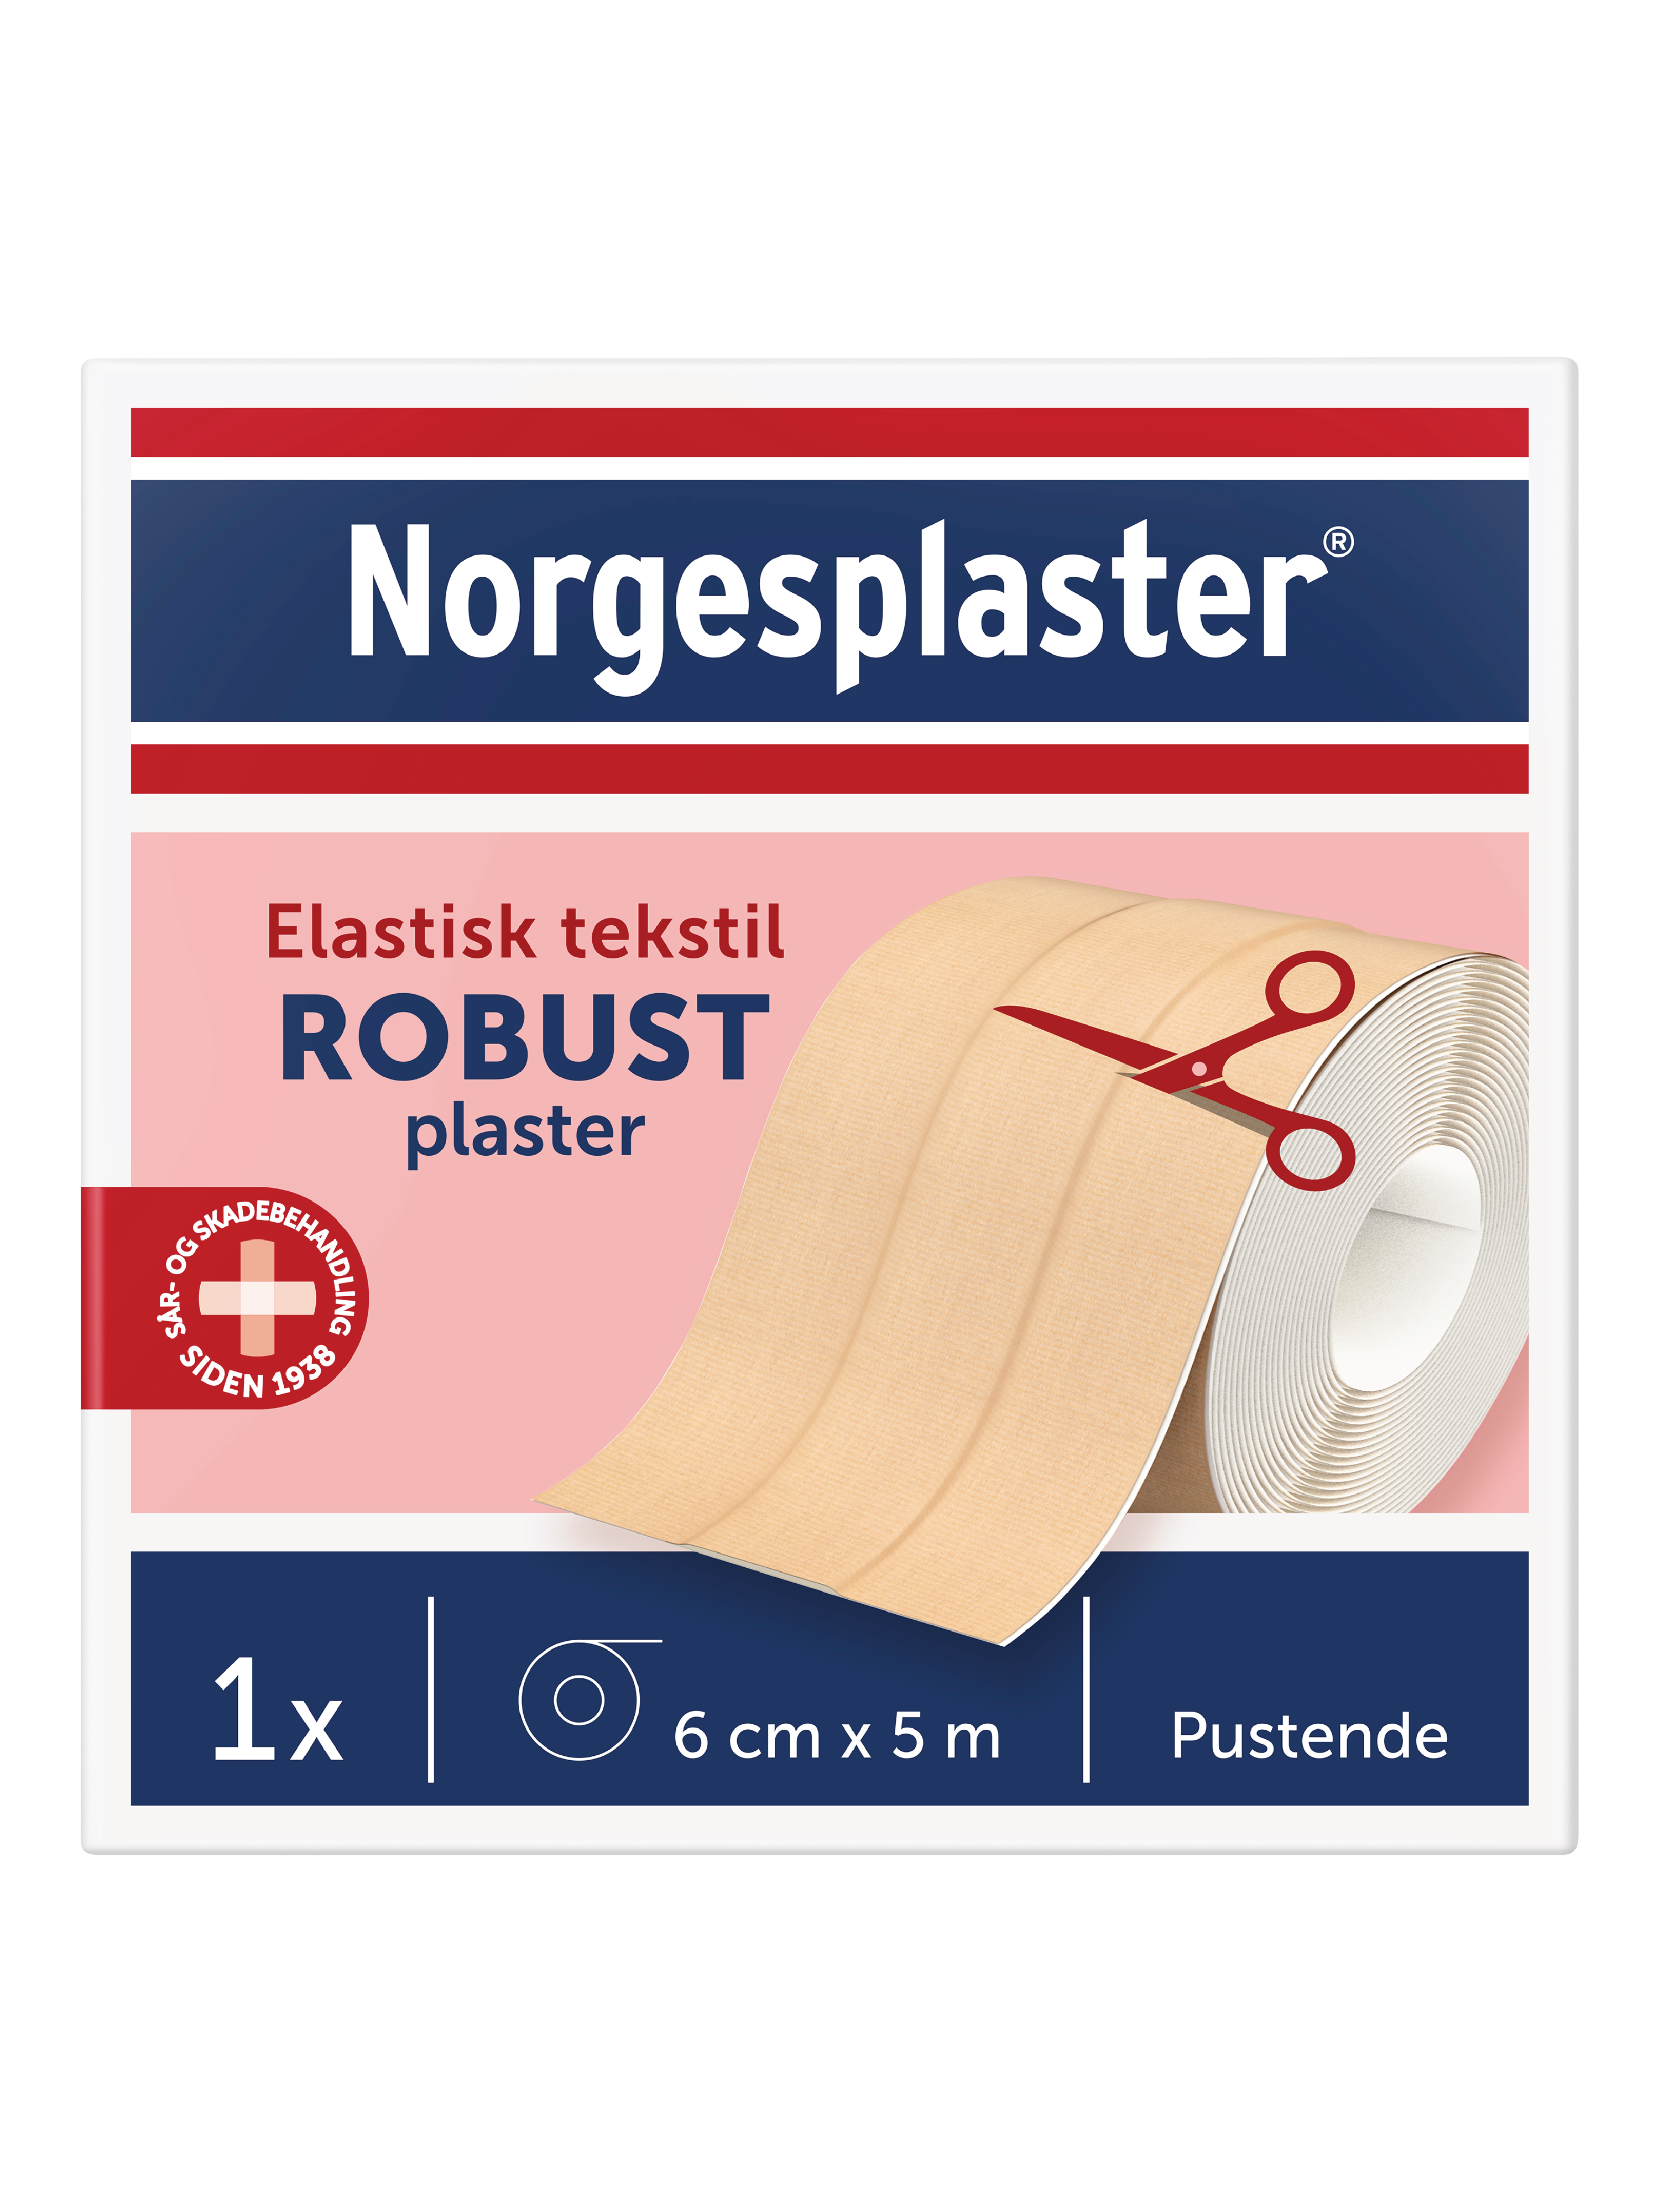 Norgesplaster Robust klippeplaster, 6cm x 5m, 1 stk.